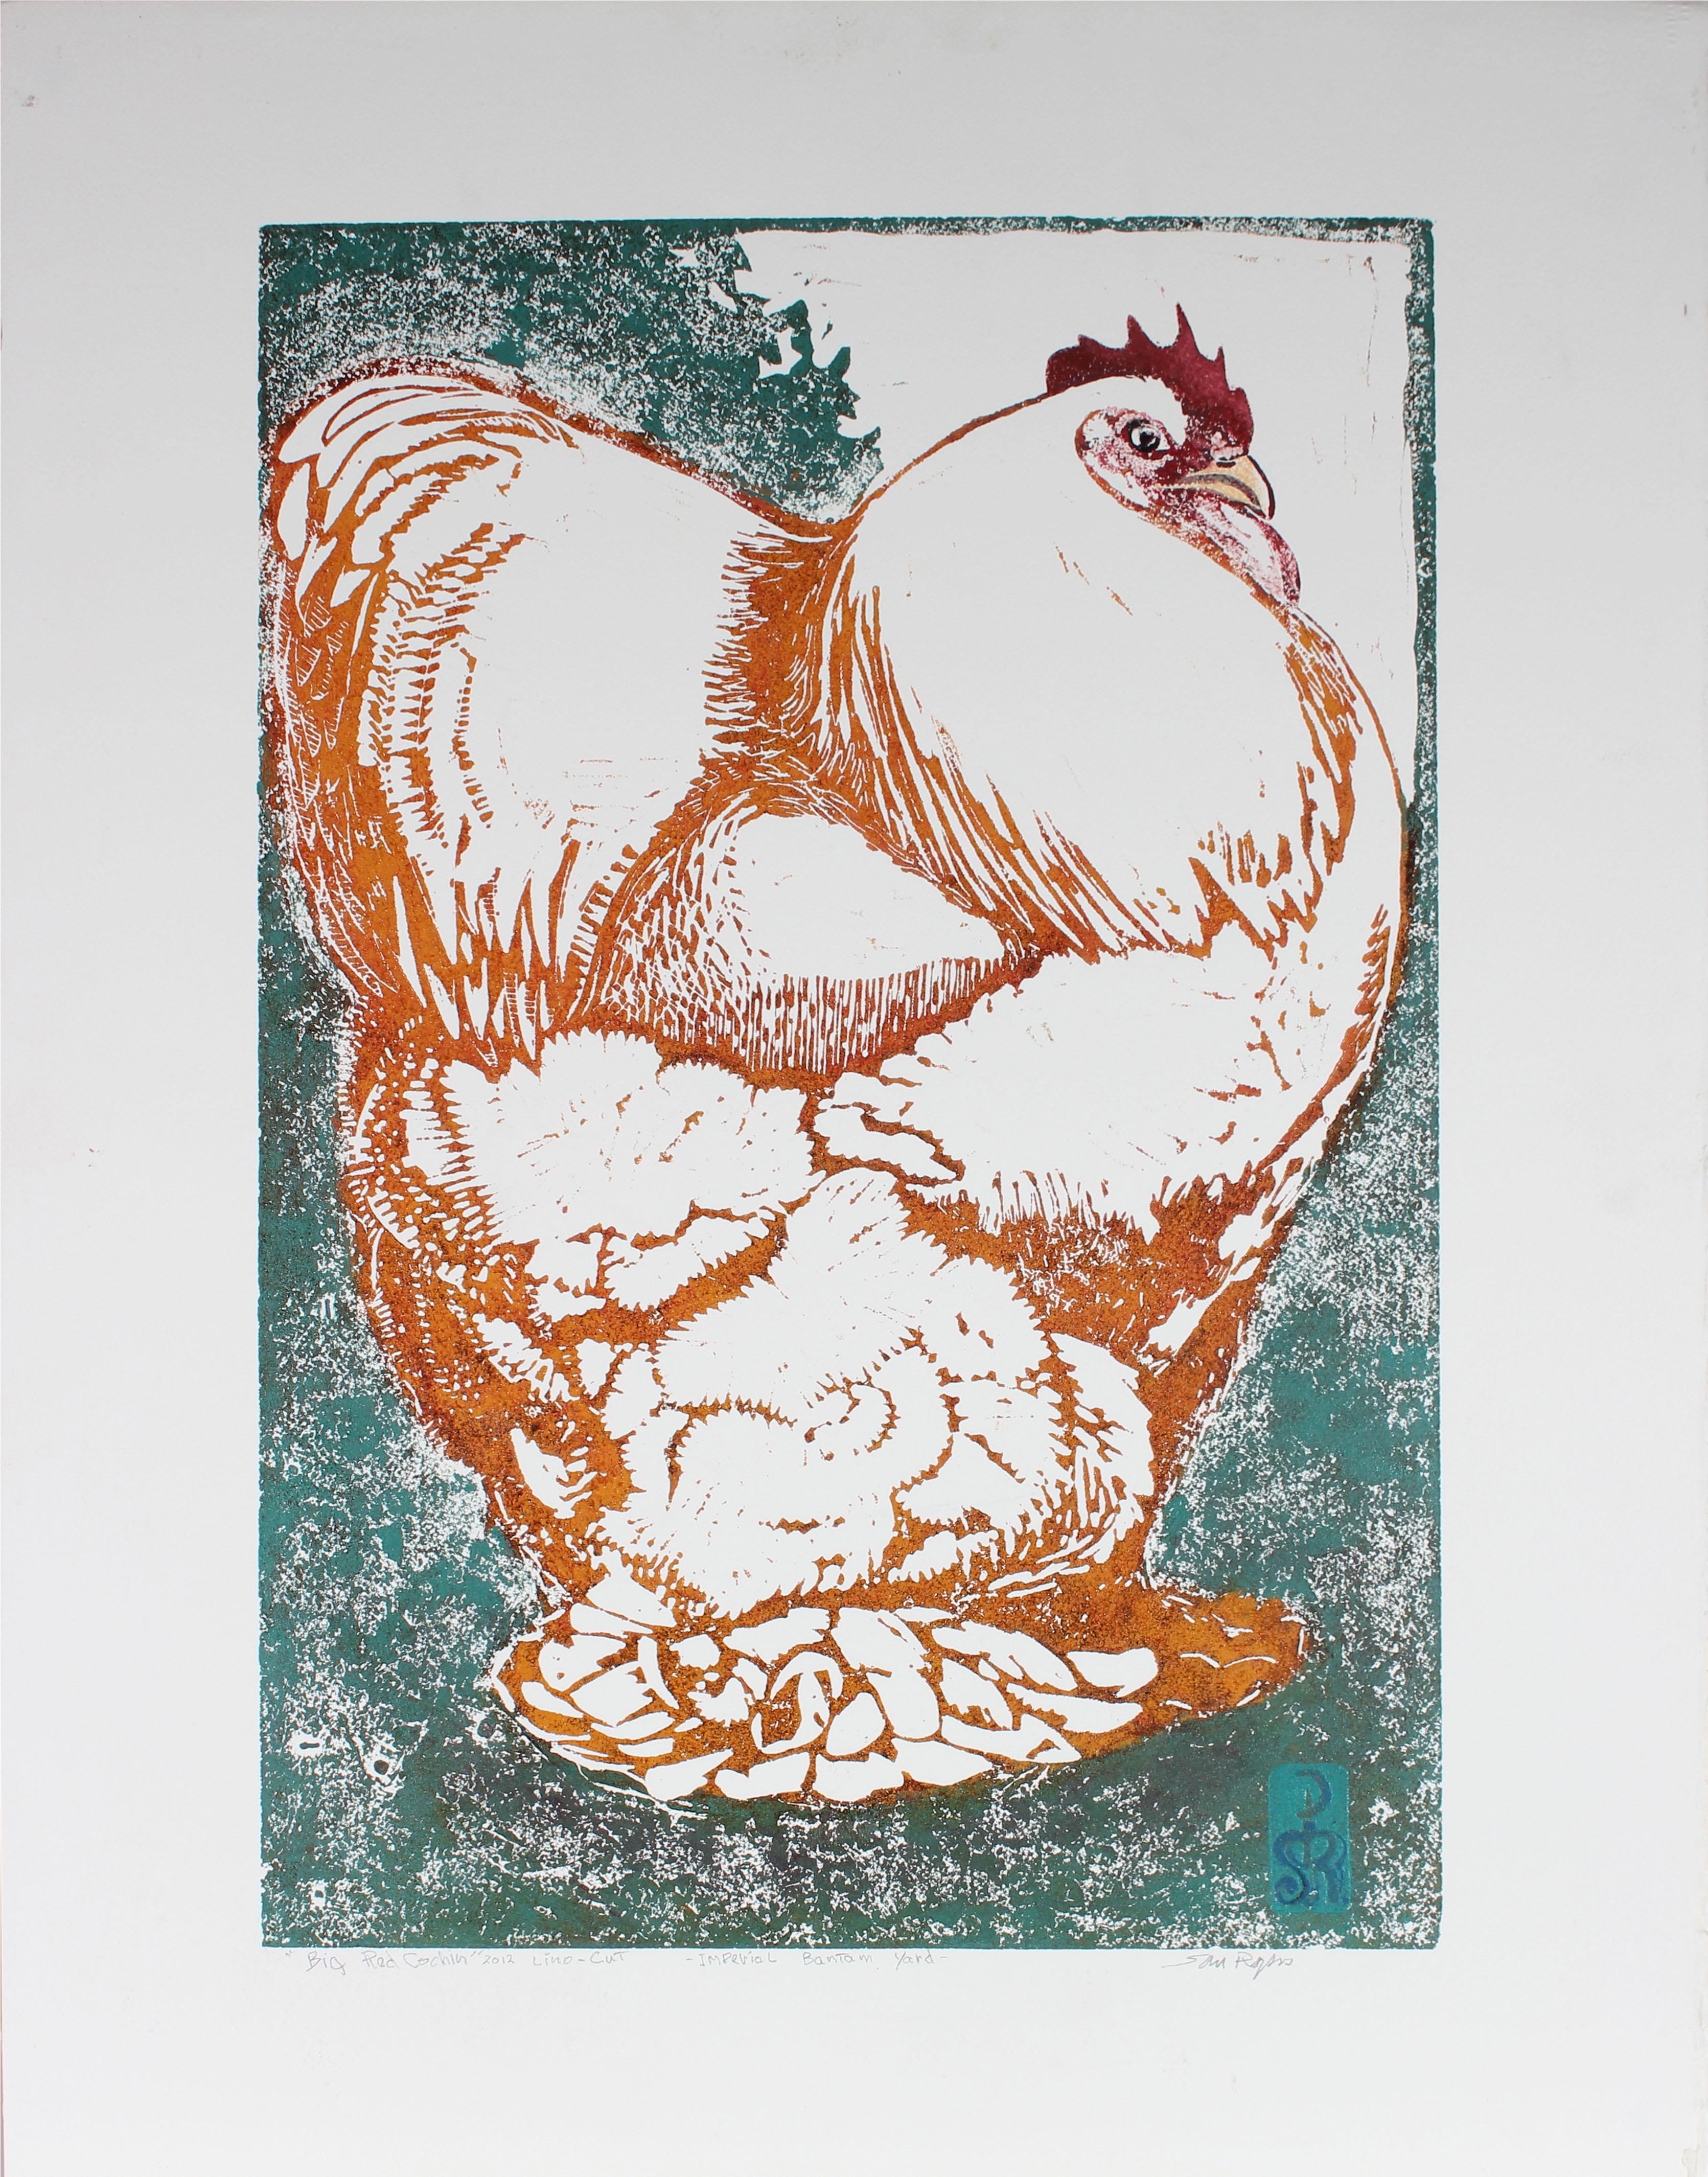 Steve Rogers Animal Print - 2012 Chicken in Orange and Blue Linocut Print